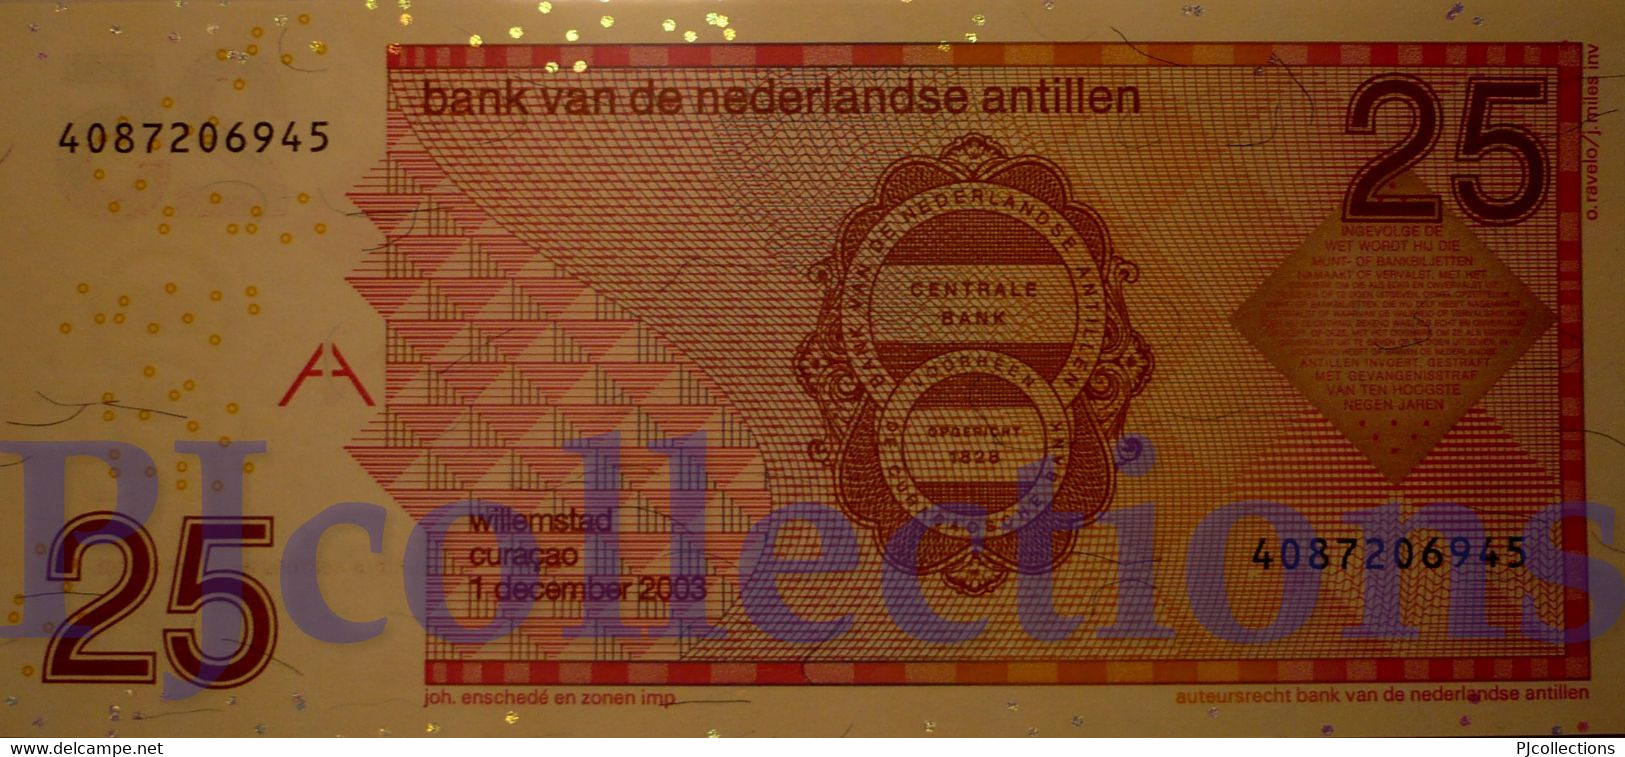 NETHERLAND ANTILLES 25 GULDEN 2003 PICK 29c UNC - Netherlands Antilles (...-1986)